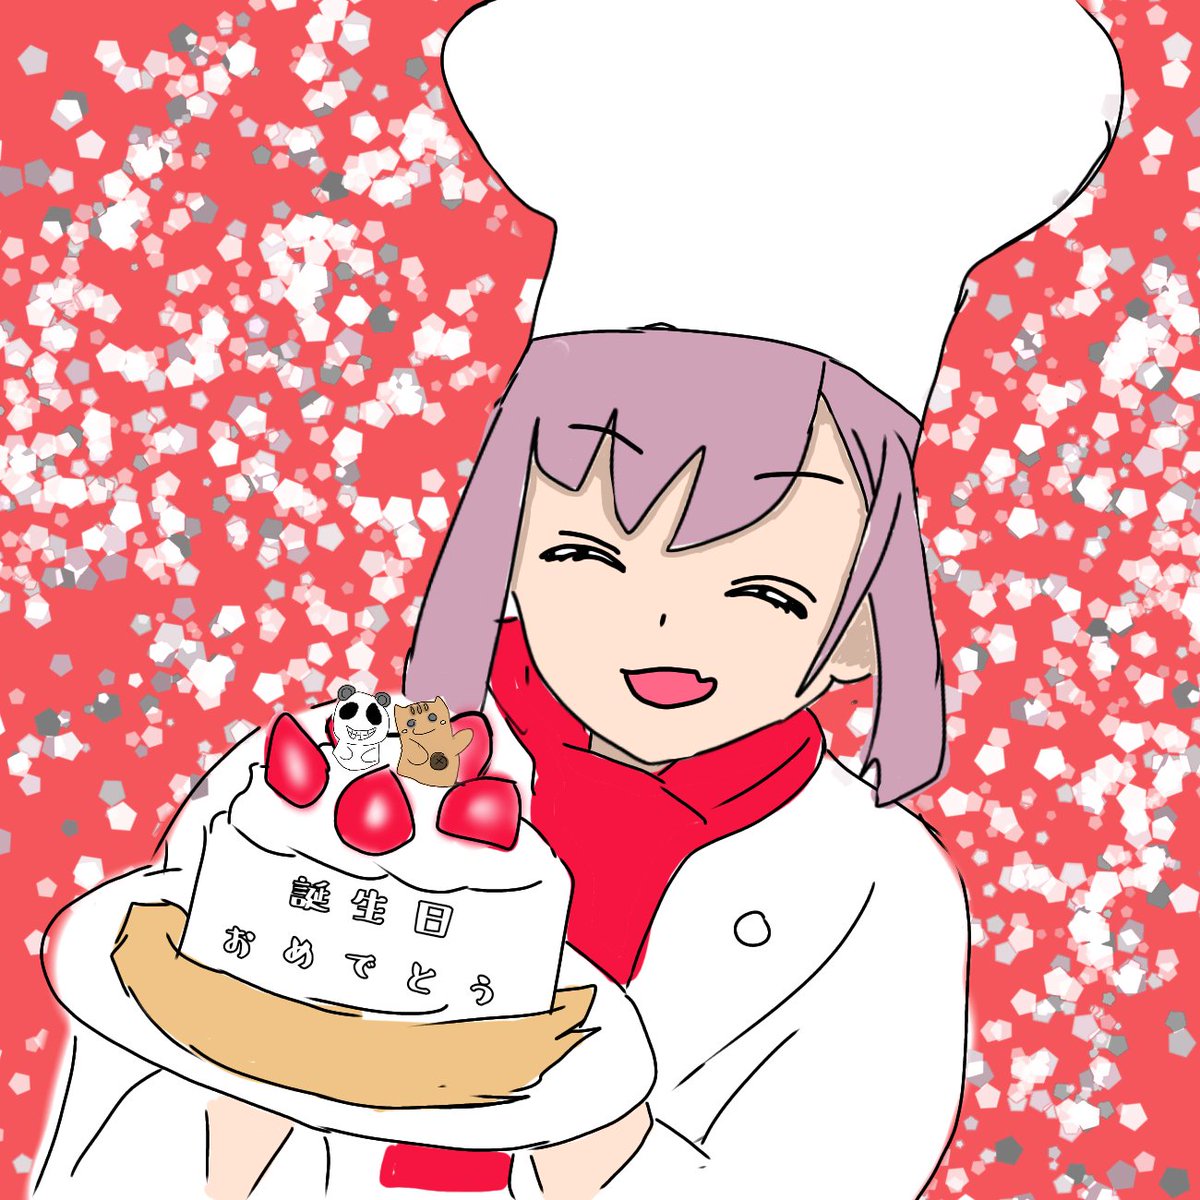 Twoucan 誕生日ケーキ の注目ツイート イラスト マンガ